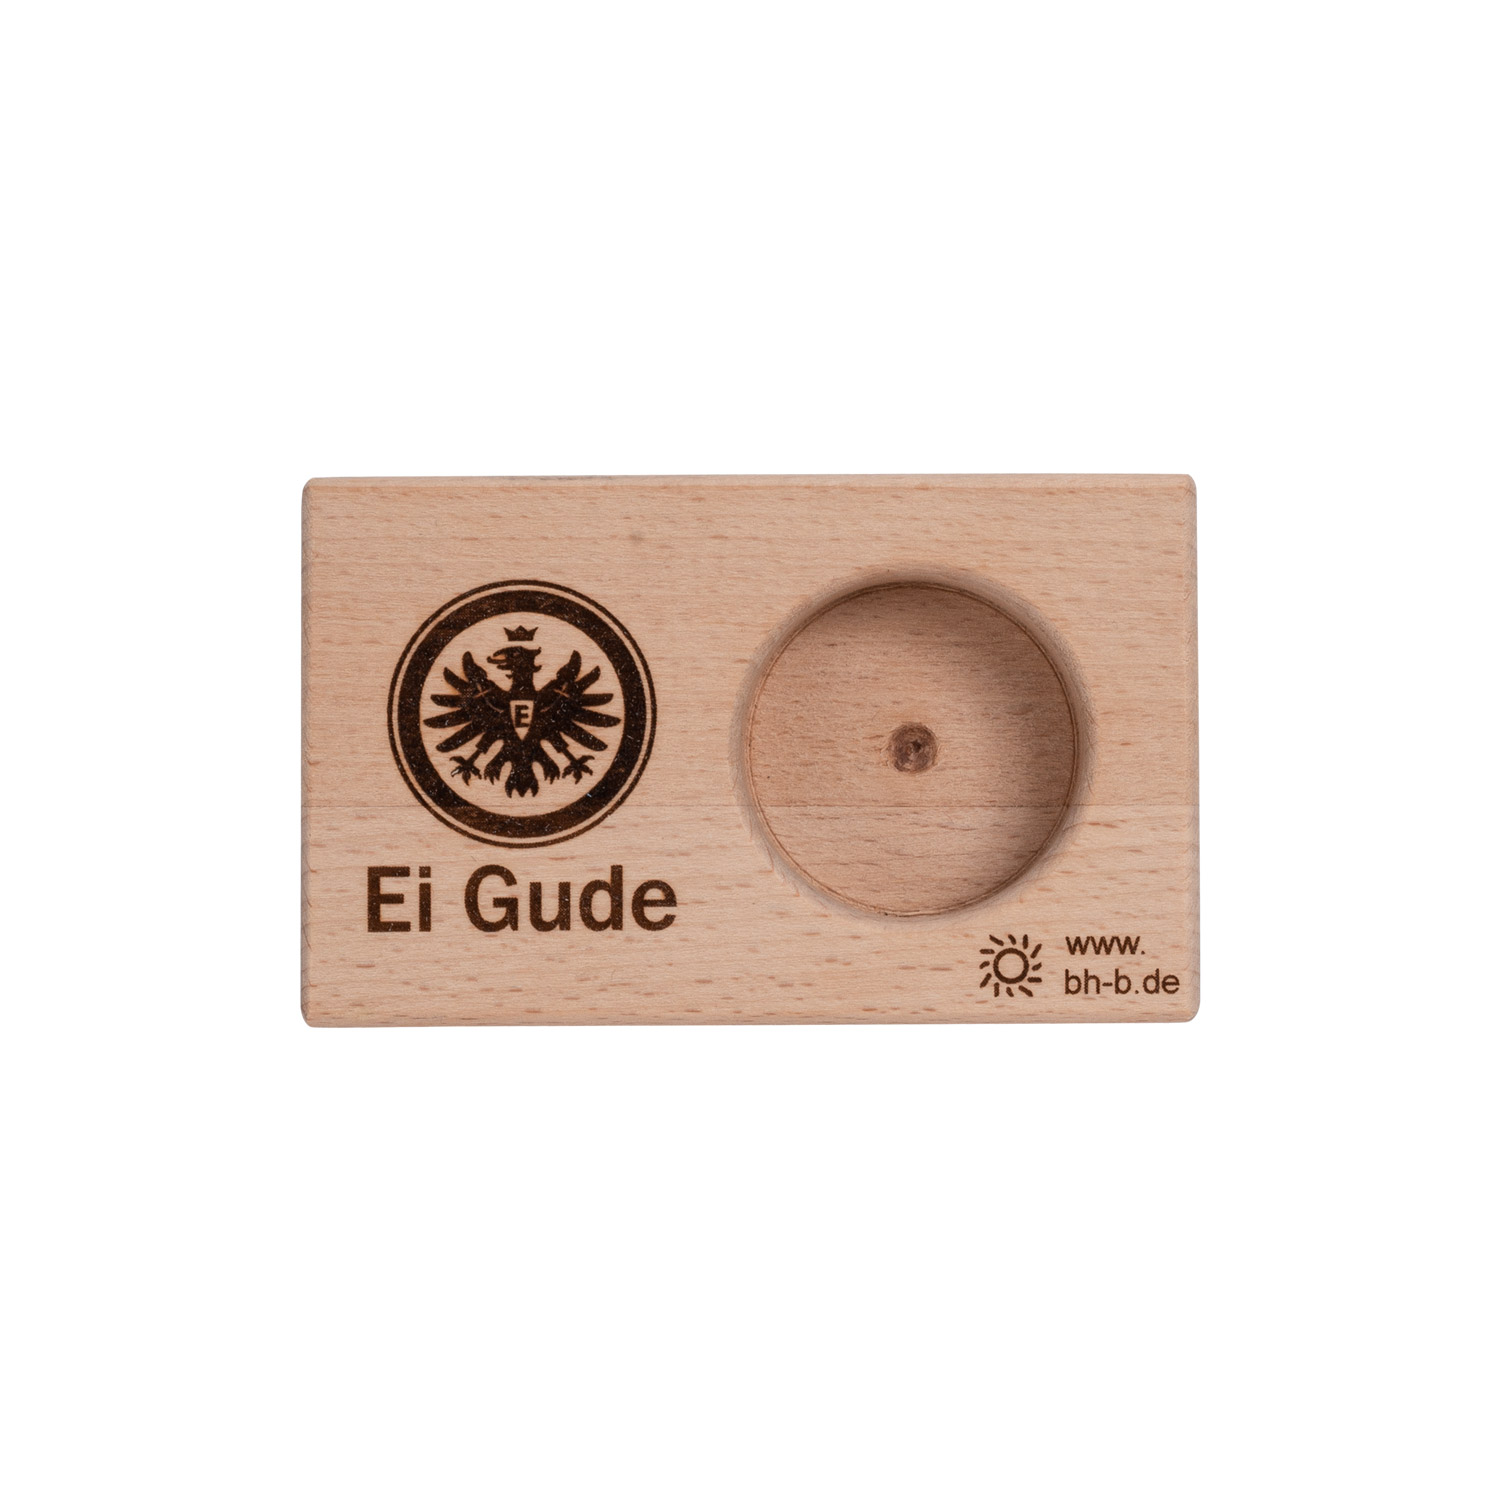 Bild 1: Eierbecher Logo Holz